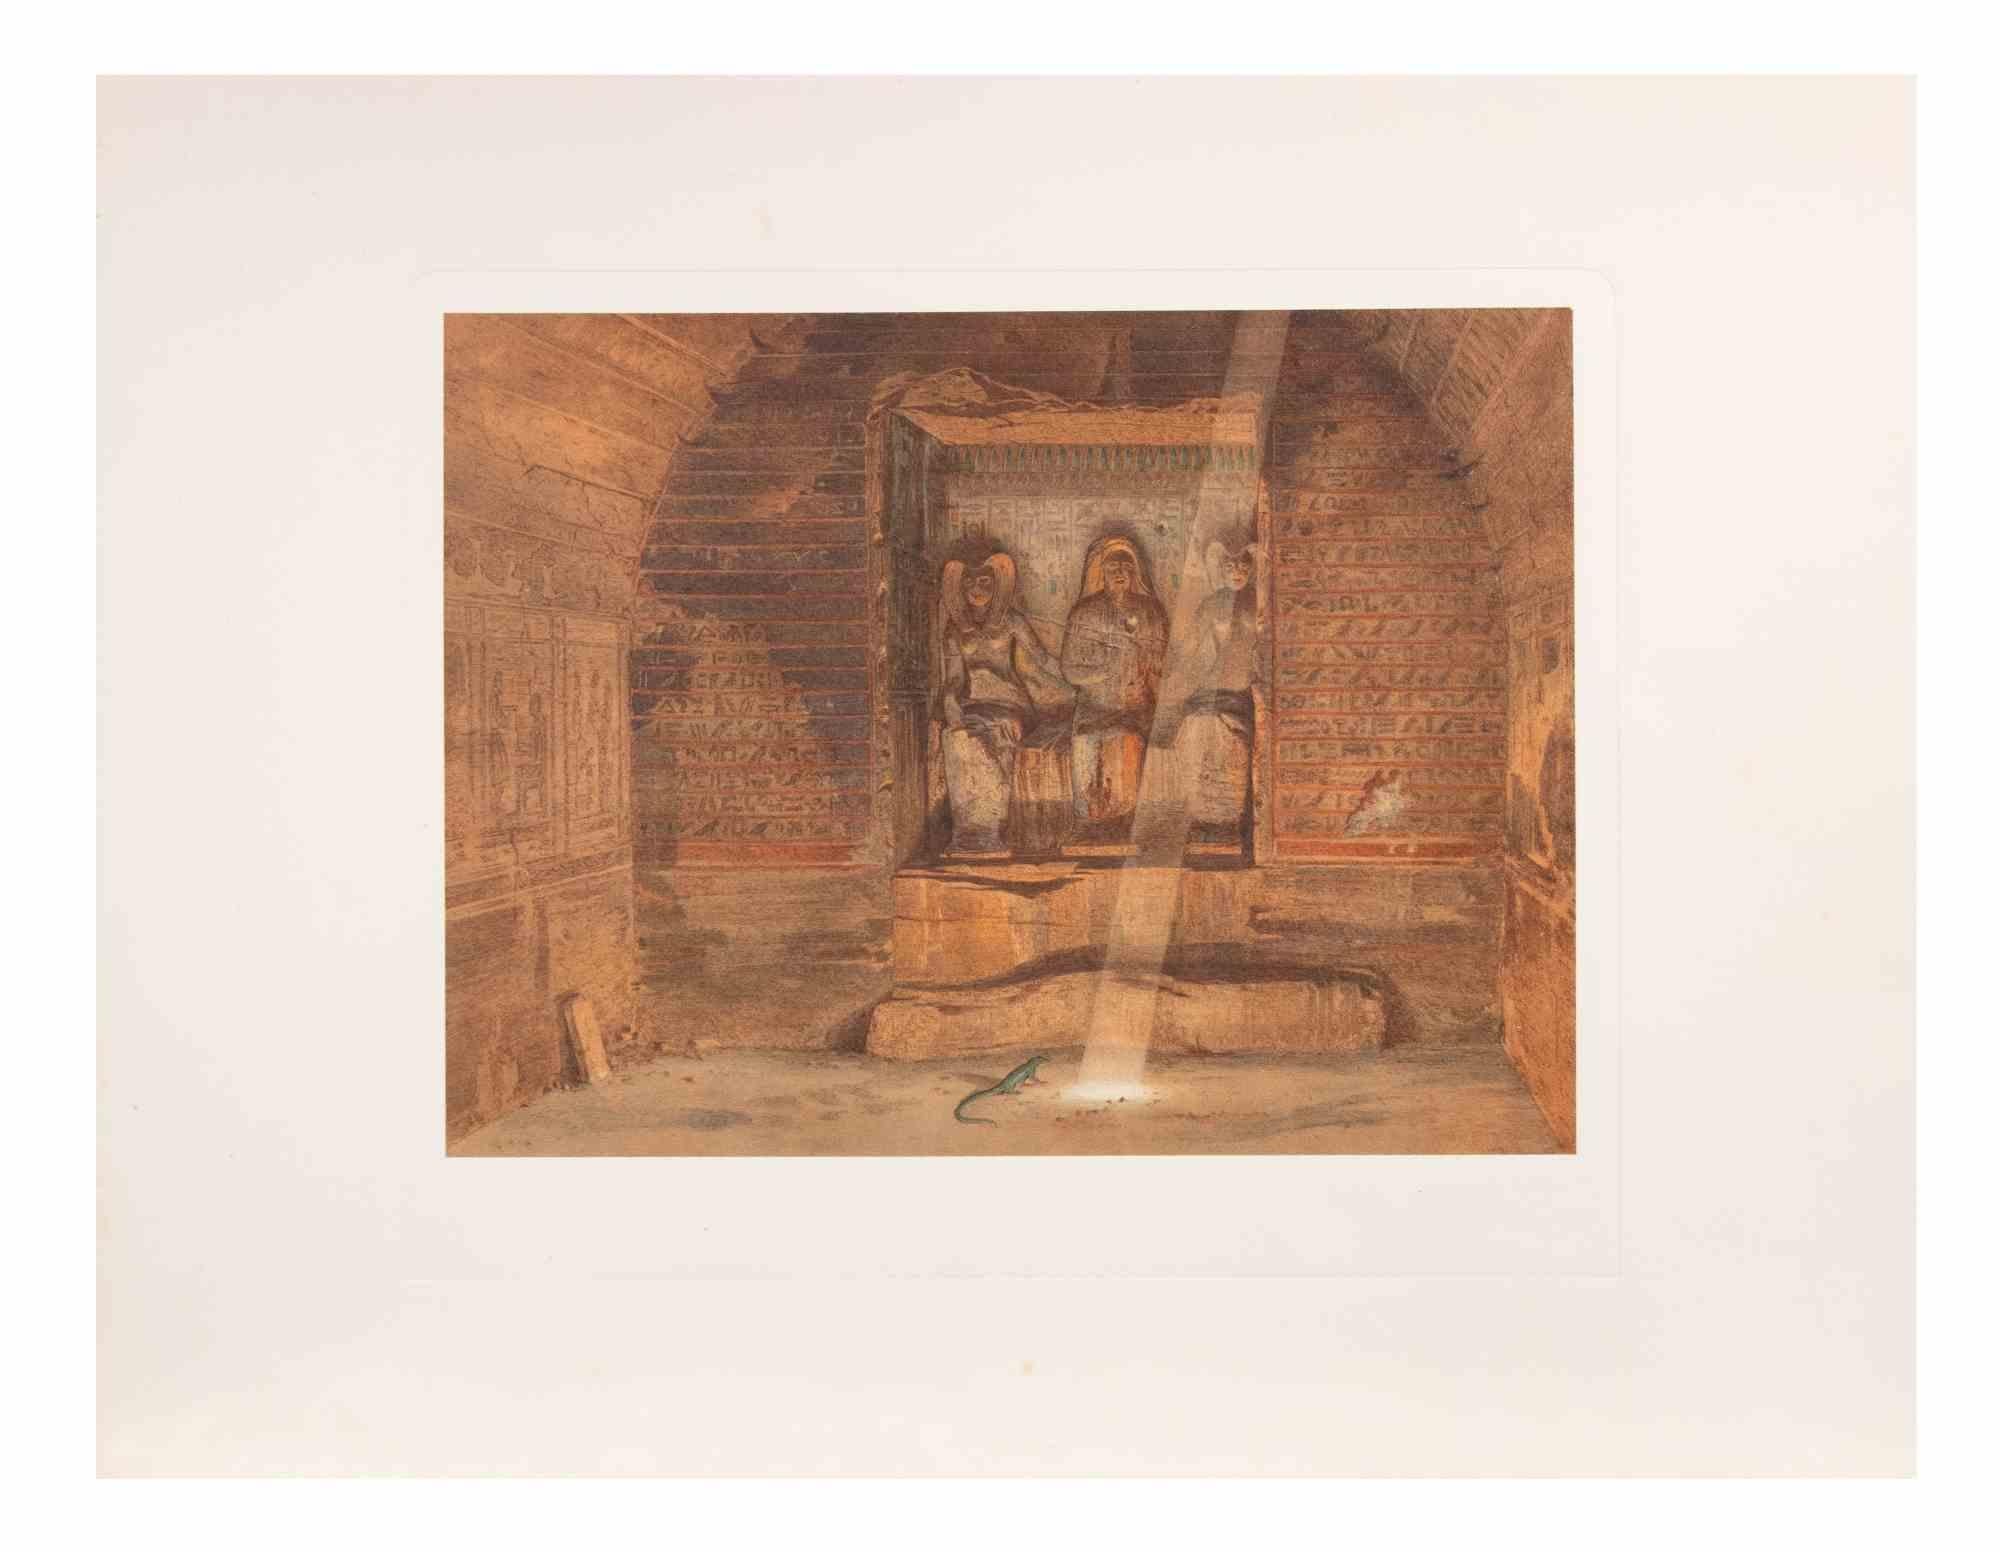 Das Innere des Tempels ist ein modernes Kunstwerk d'aprés Karl Werner 

Gemischtfarbige Chromolithographie. 

Das Werk ist den Aquarellen nachempfunden, die der Künstler während einer Reise nach Ägypten zwischen 1862 und 1865 anfertigte.

Die